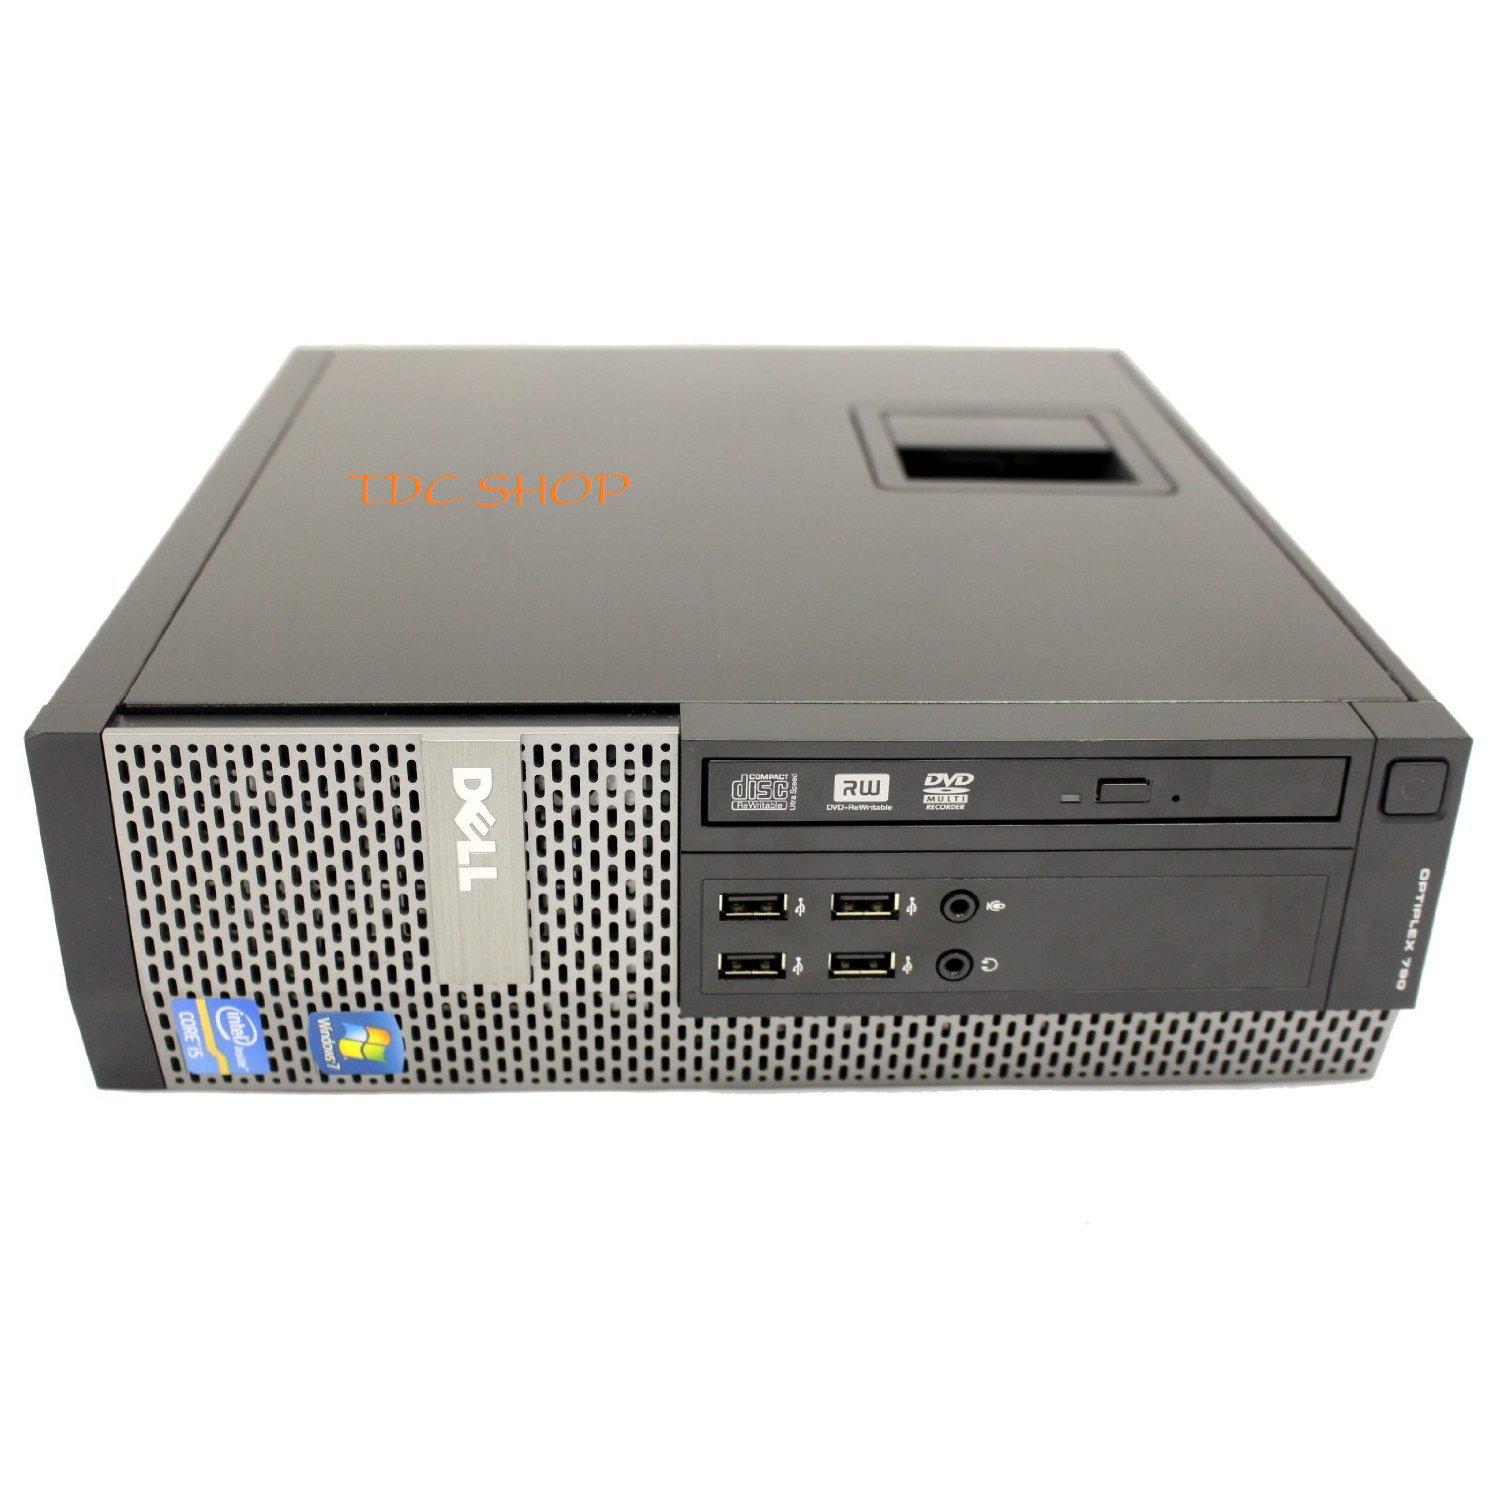 Cây máy tính để bàn Dell OPTIPLEX 790 Sff, EX (CPU G620, Ram 4GB, HDD 250GB, DVD) tặng USB Wifi,...